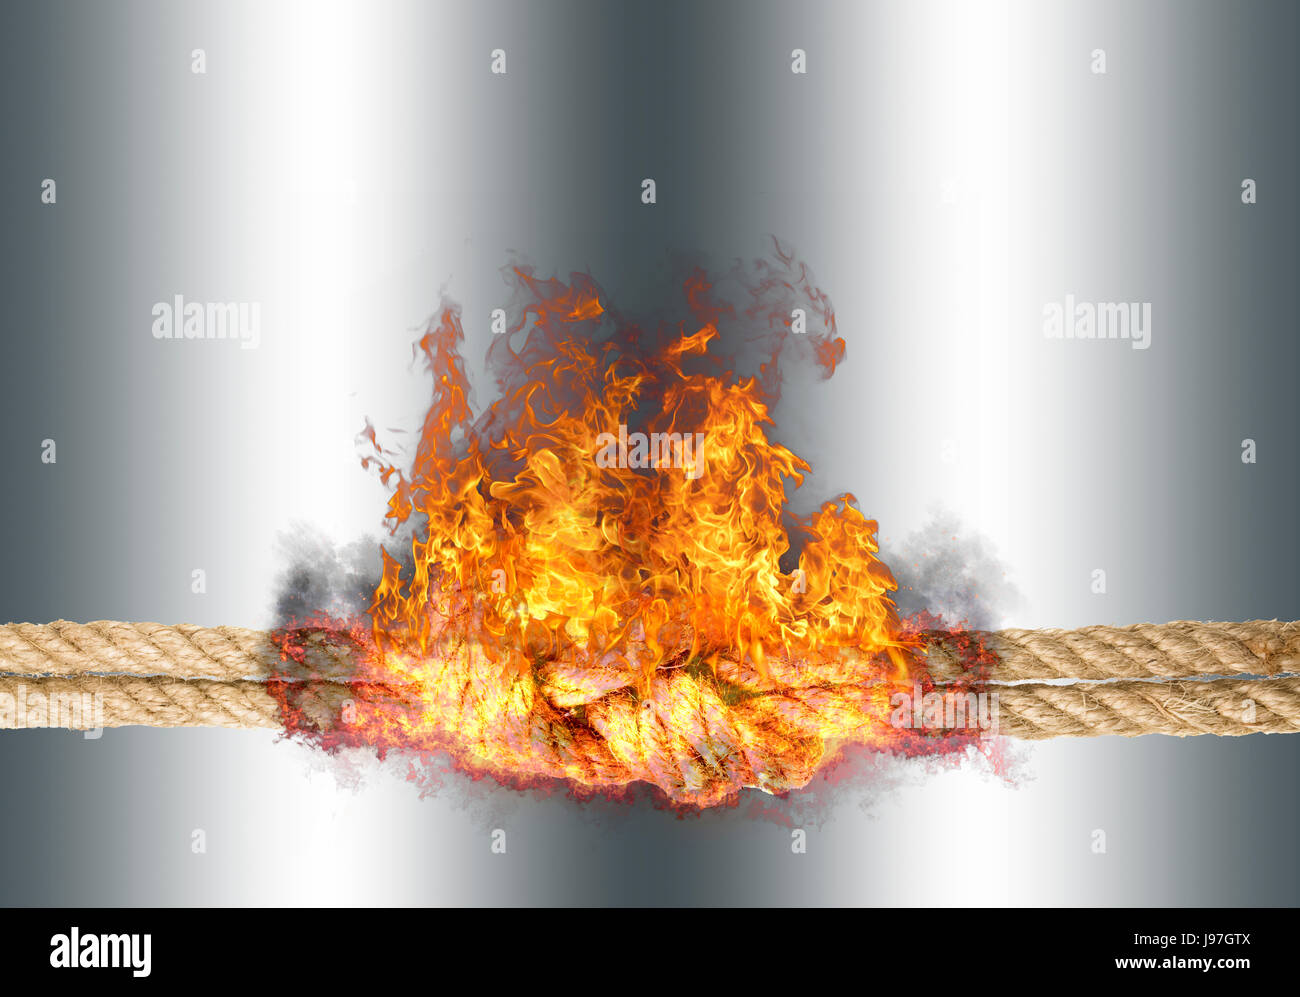 Corde solide avec un noeud, bursted dans des flammes, isolé contre l'arrière-plan de couleur argent Banque D'Images